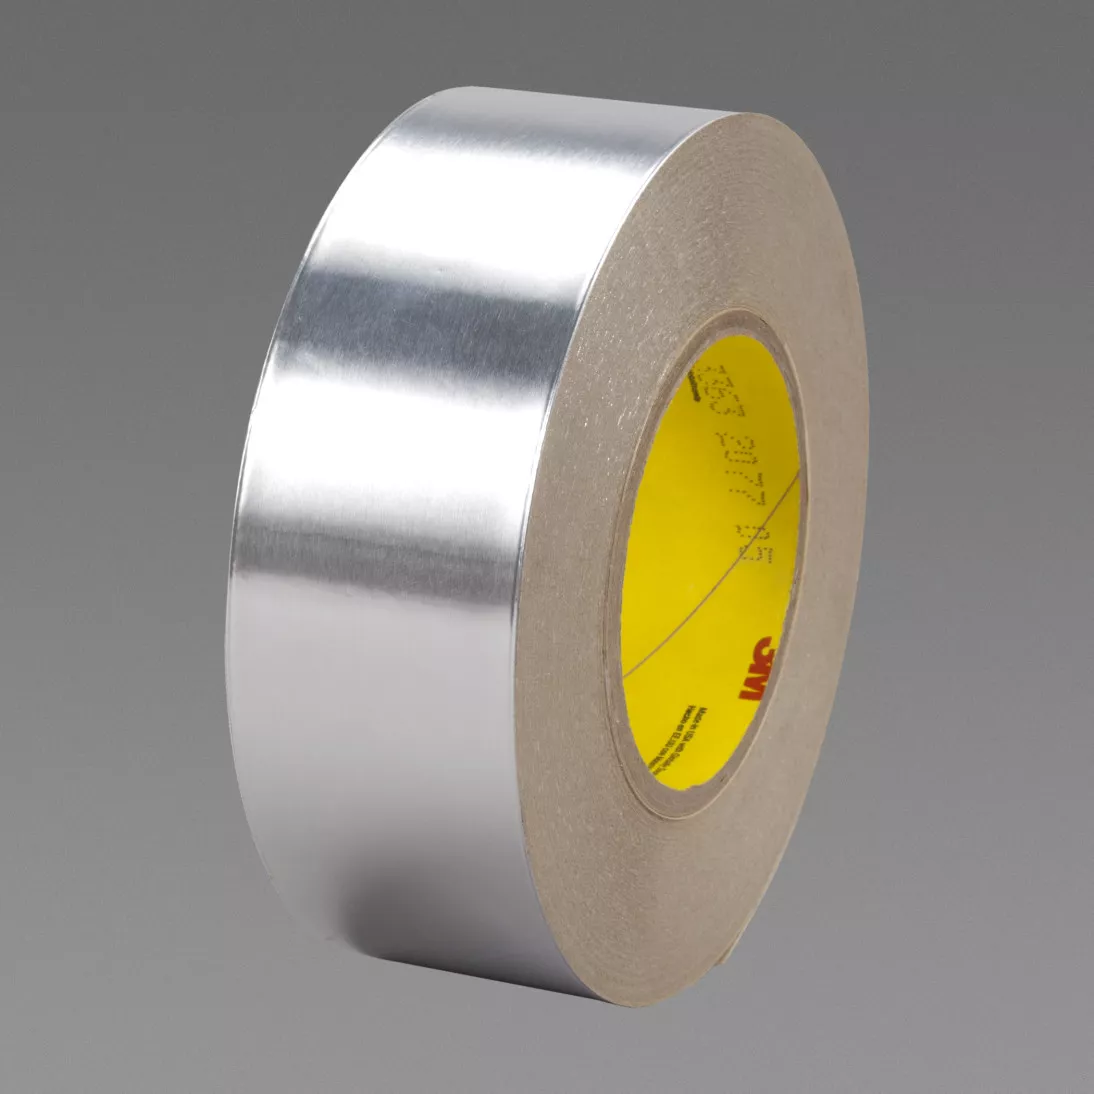 3M™ Aluminum Foil Tape 3363, Silver, 60 in x 60 yd, 5 mil, 1 roll per
case